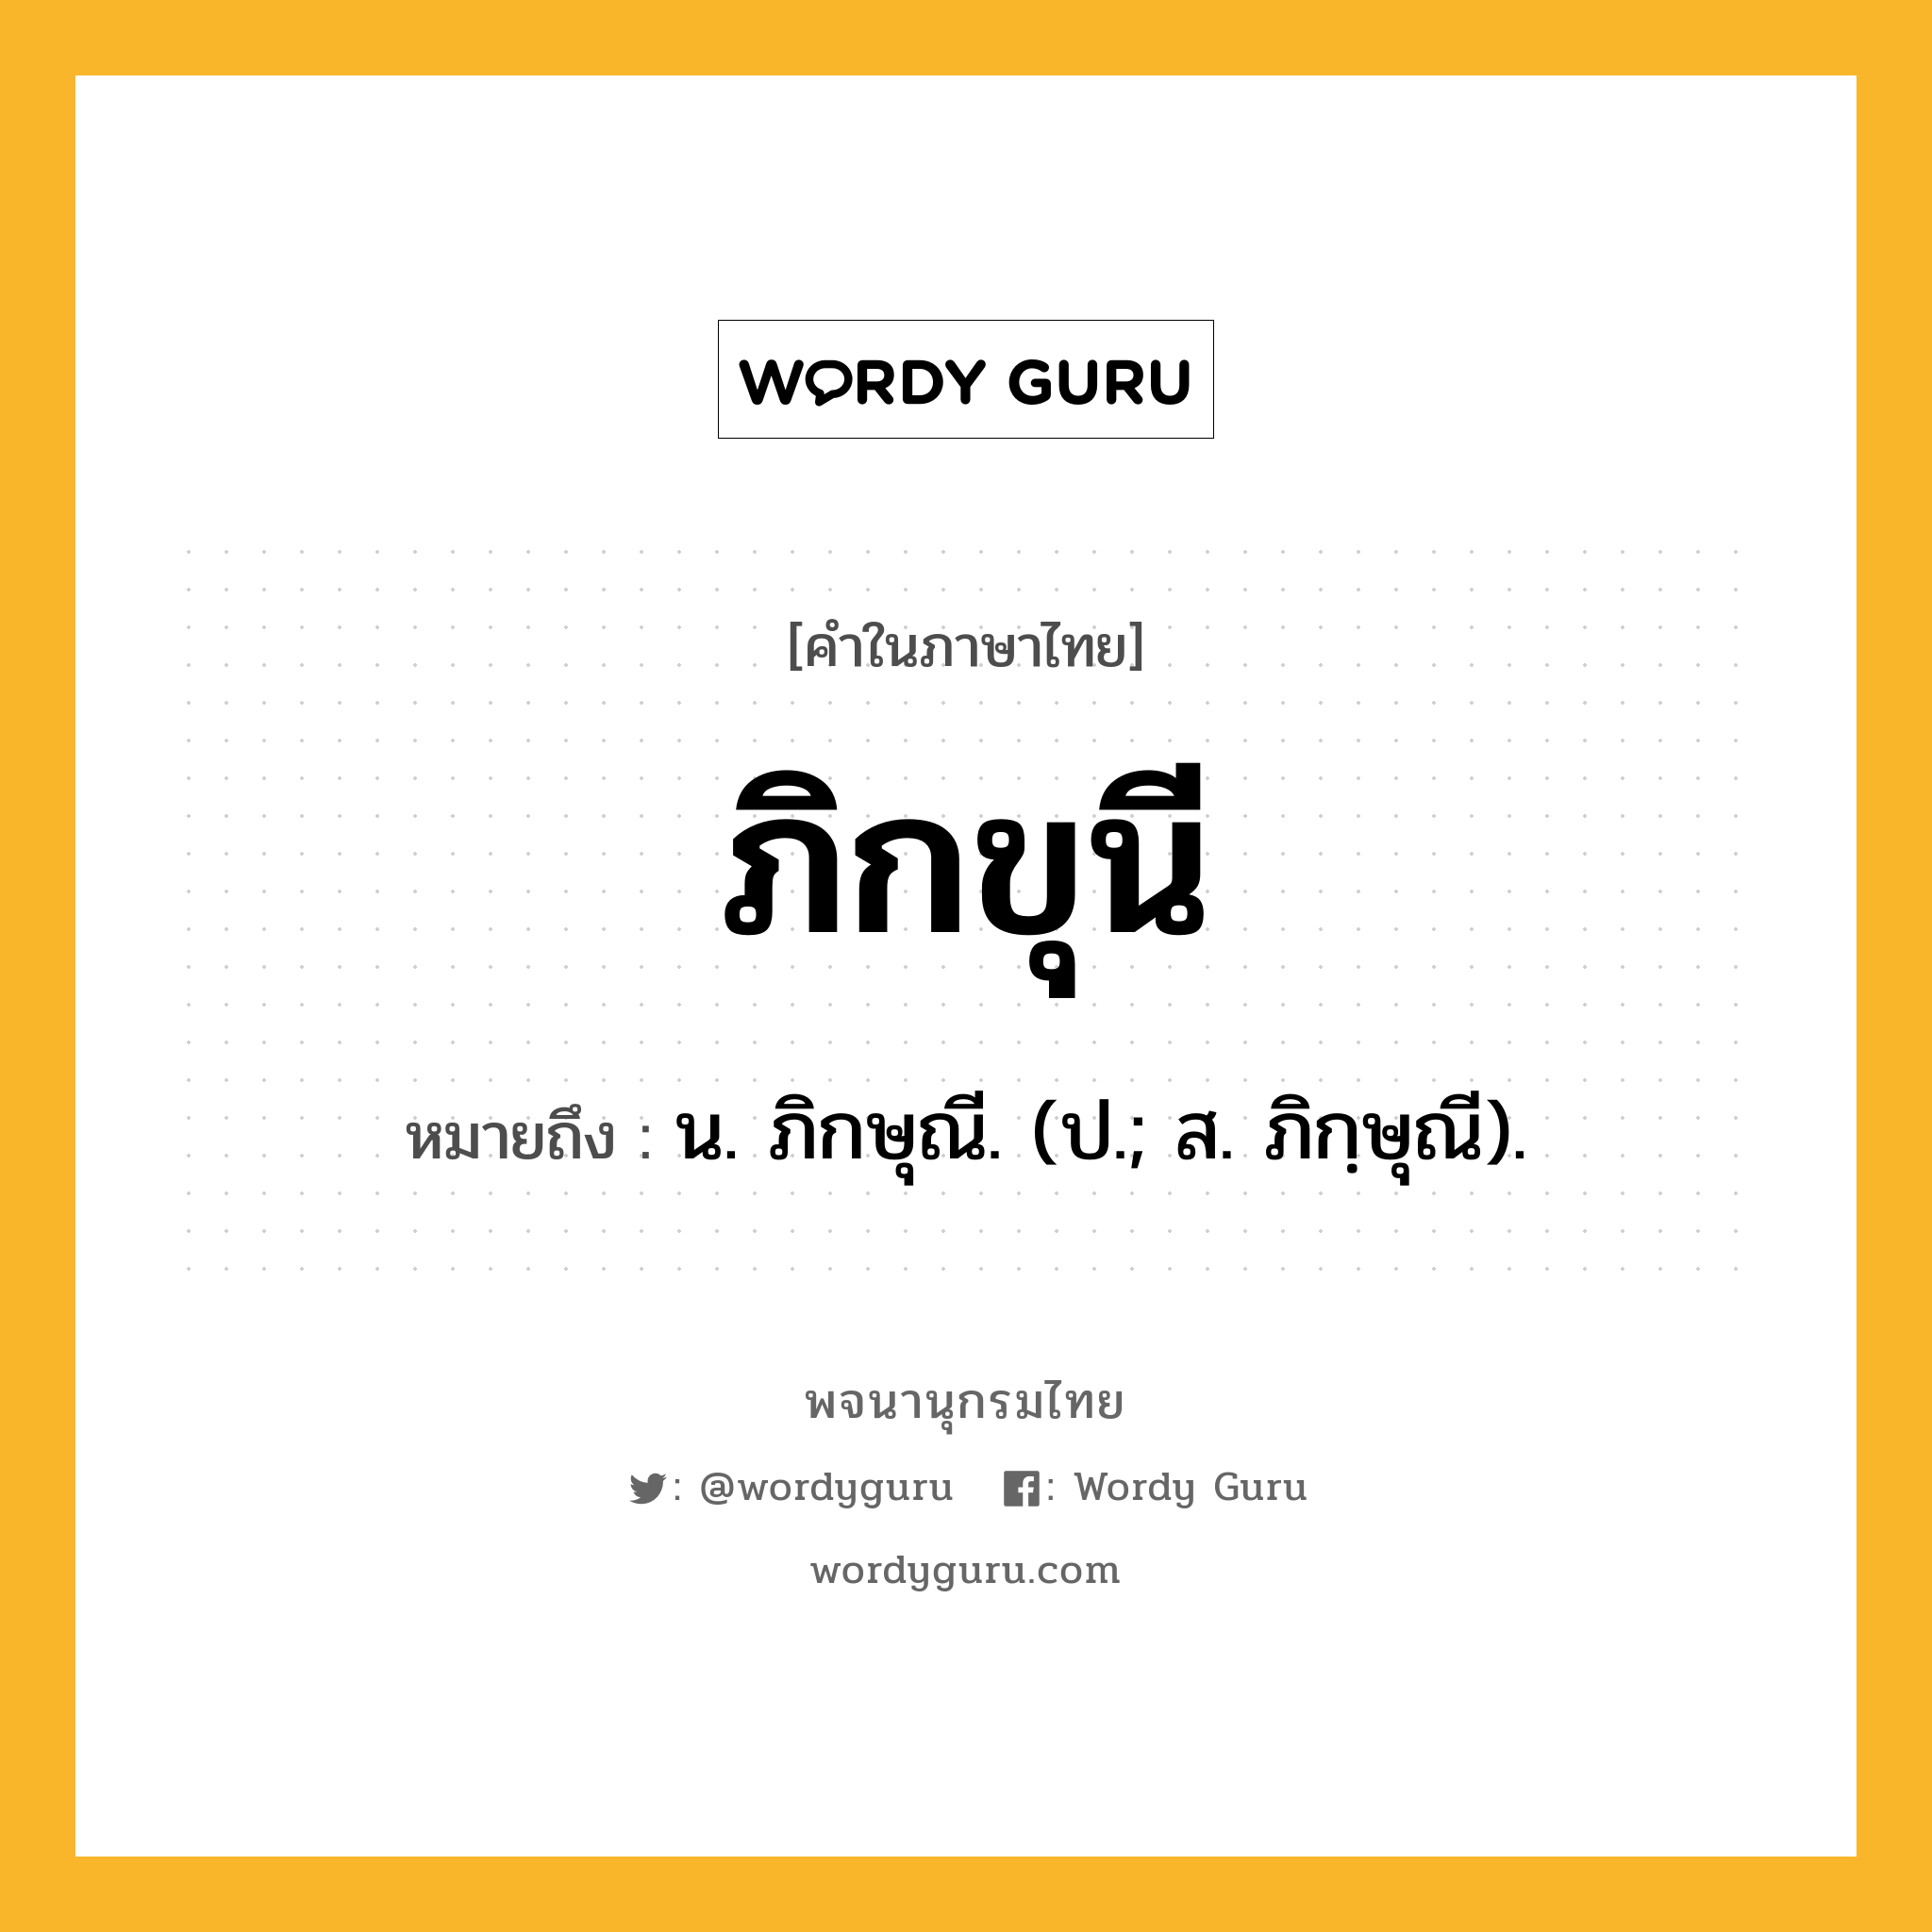 ภิกขุนี หมายถึงอะไร?, คำในภาษาไทย ภิกขุนี หมายถึง น. ภิกษุณี. (ป.; ส. ภิกฺษุณี).